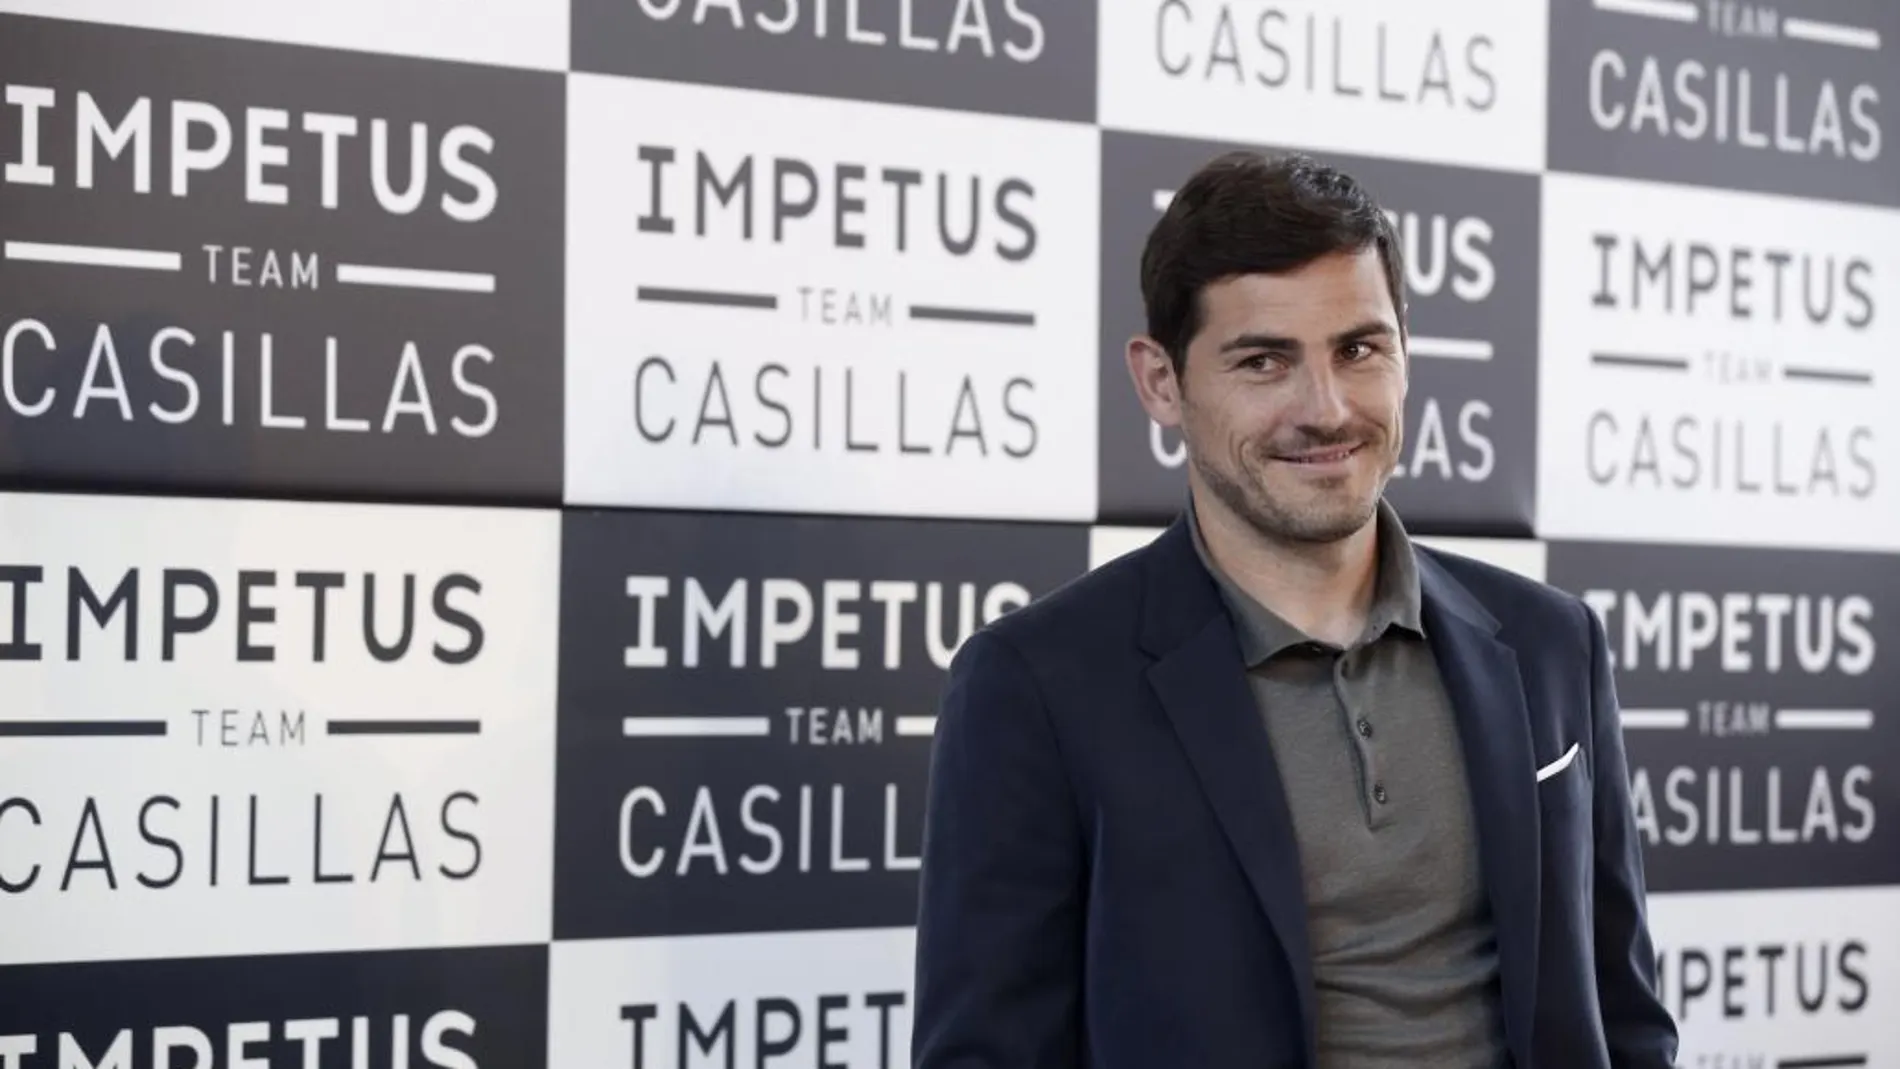 El portero del Oporto, Iker Casillas, durante el acto de presentación de 'Impetus Team Casillas'